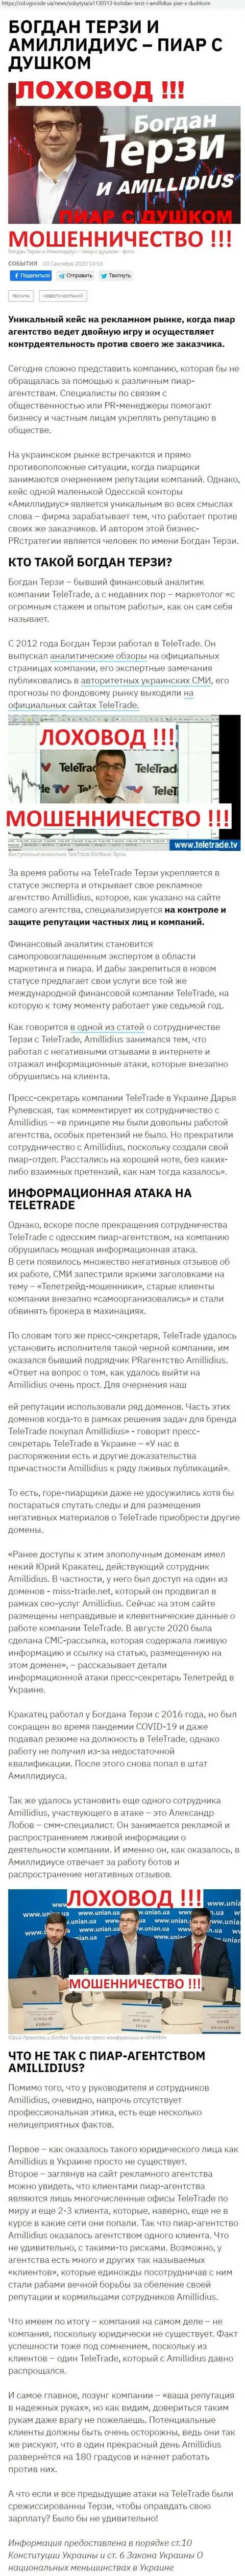 Богдан Терзи ненадежный партнер, данные со слов бывшего работника компании Амиллидиус Ком